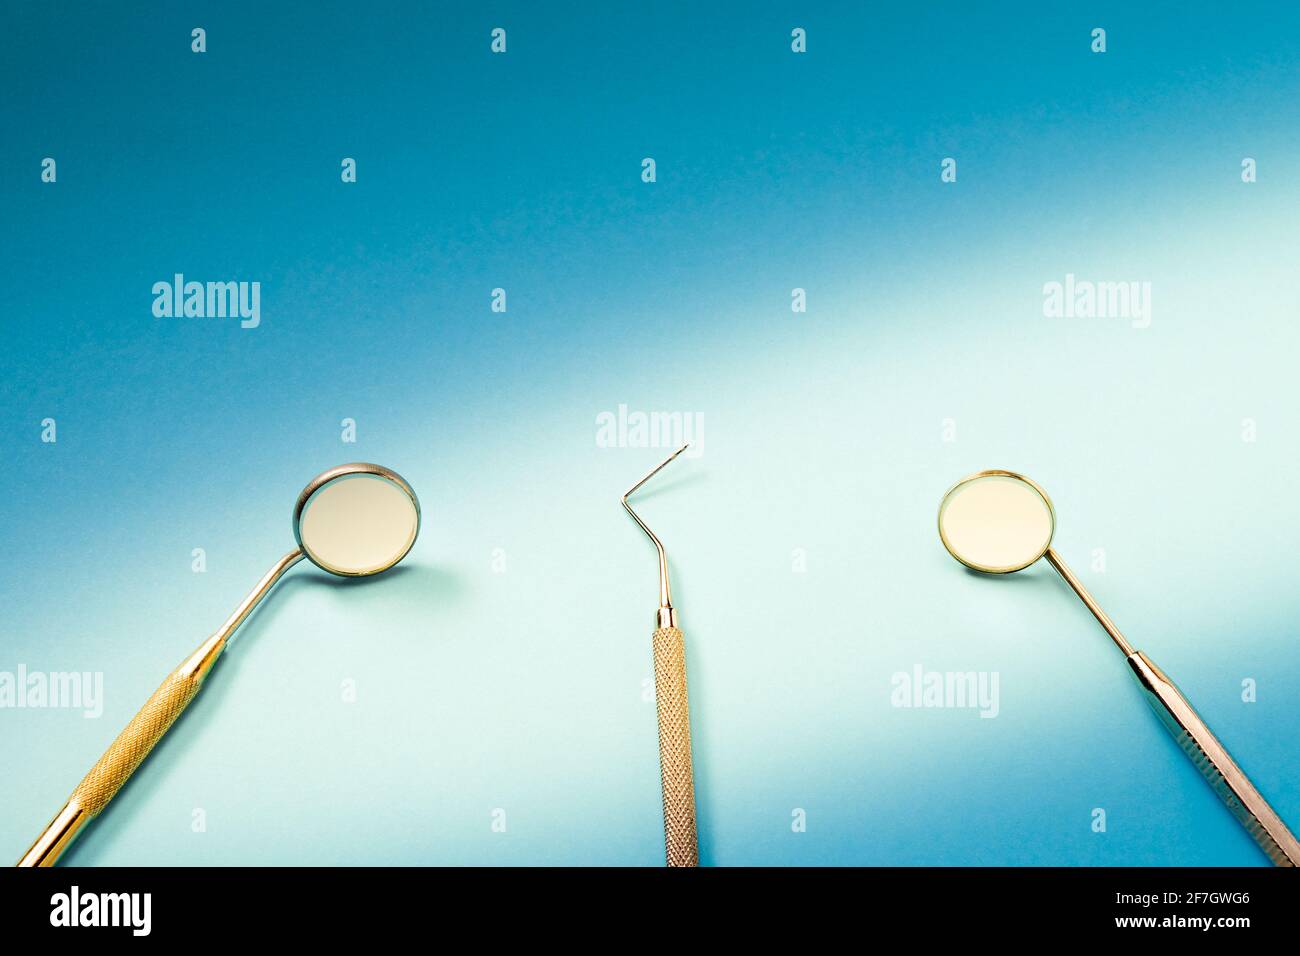 Zahnarztwerkzeuge: Spiegel, Dental Explorer und Pinzette liegen auf blauem  Hintergrund im Lichtstrahl Stockfotografie - Alamy